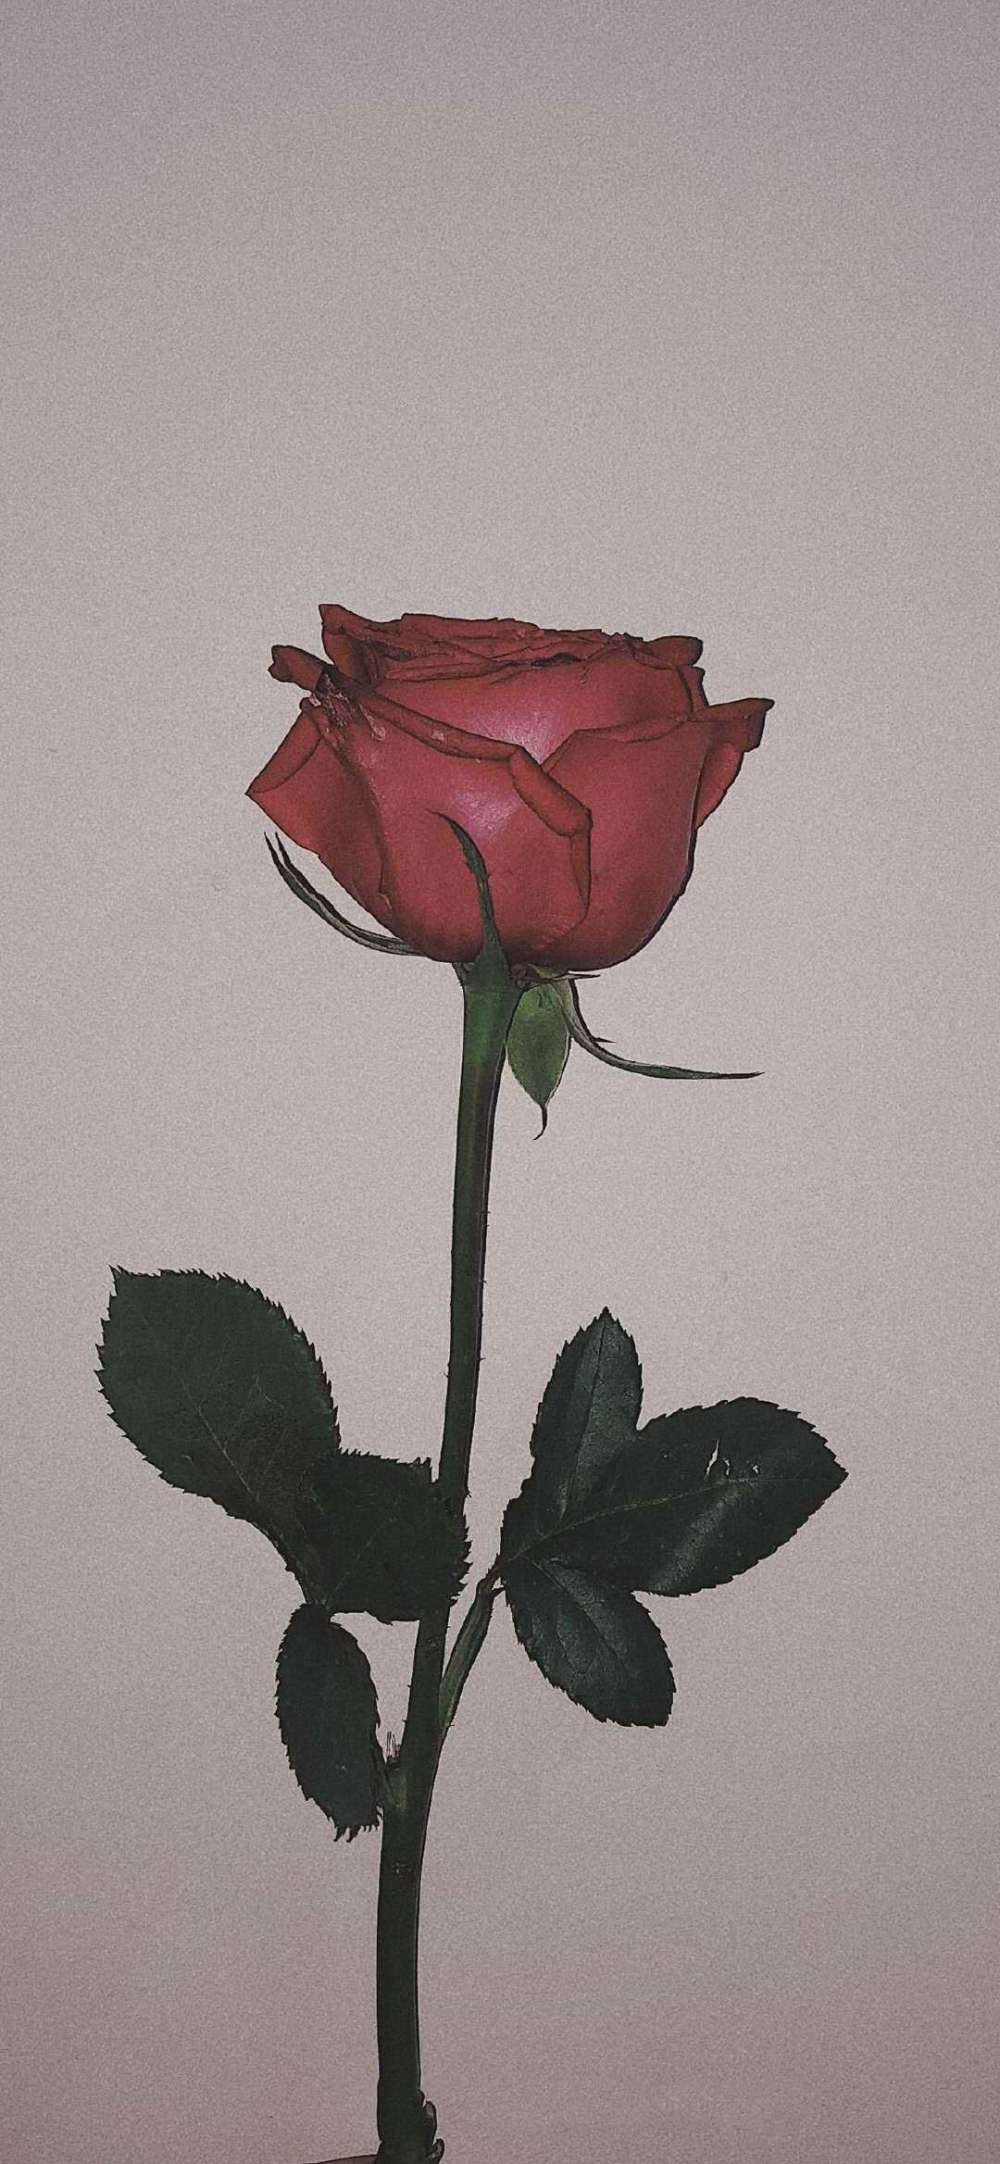 送你1朵玫瑰花——你是我的一见钟情,情有独钟,心中只有你.